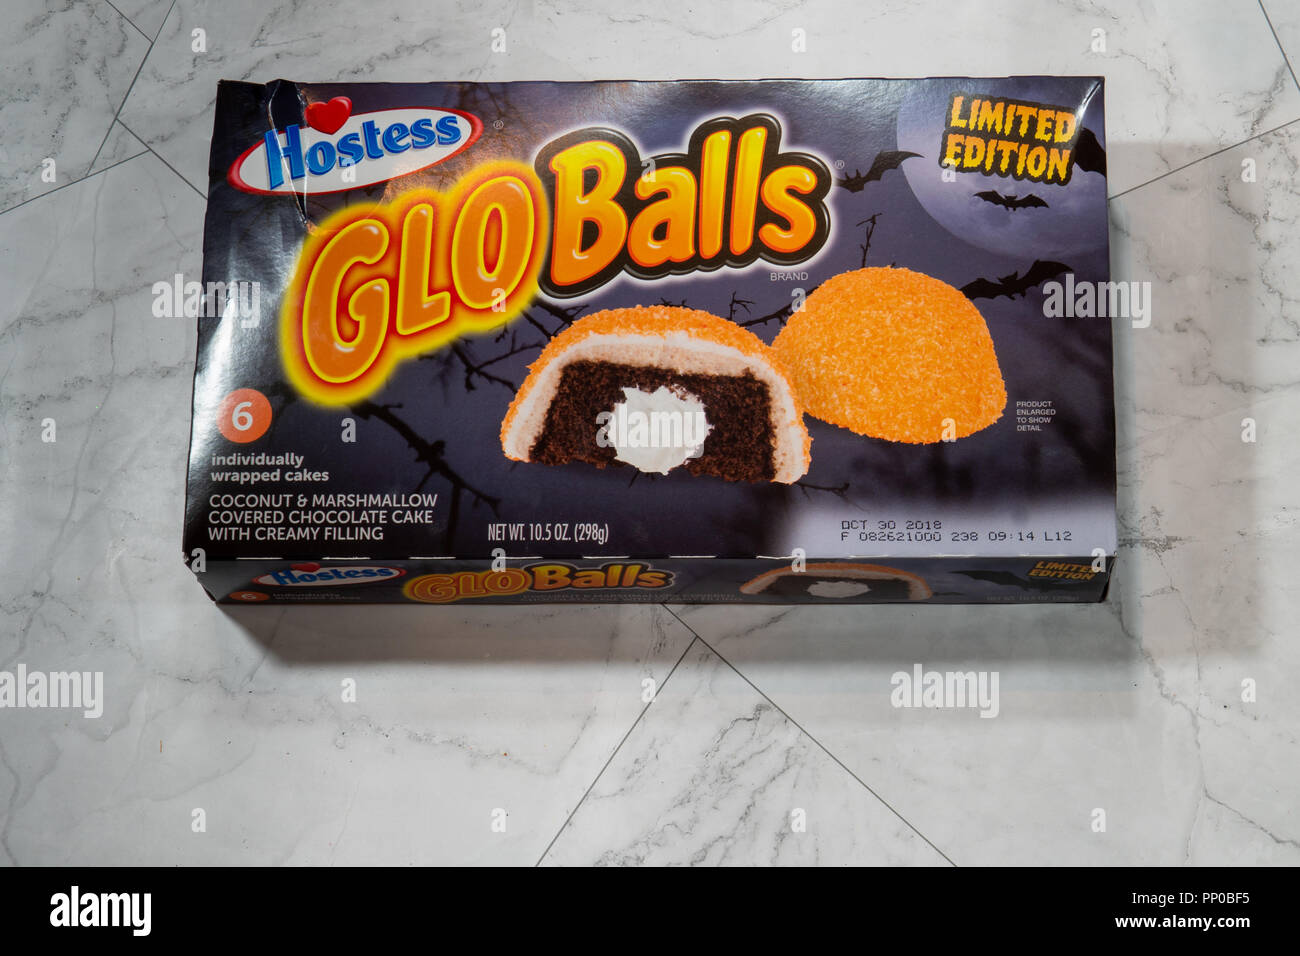 Hostess Marke GloBalls sind Halloween limited edition Snoball Schneebälle Kuchen mit orangefarbenem Zuckerguss und Marshmallow Aroma Stockfoto